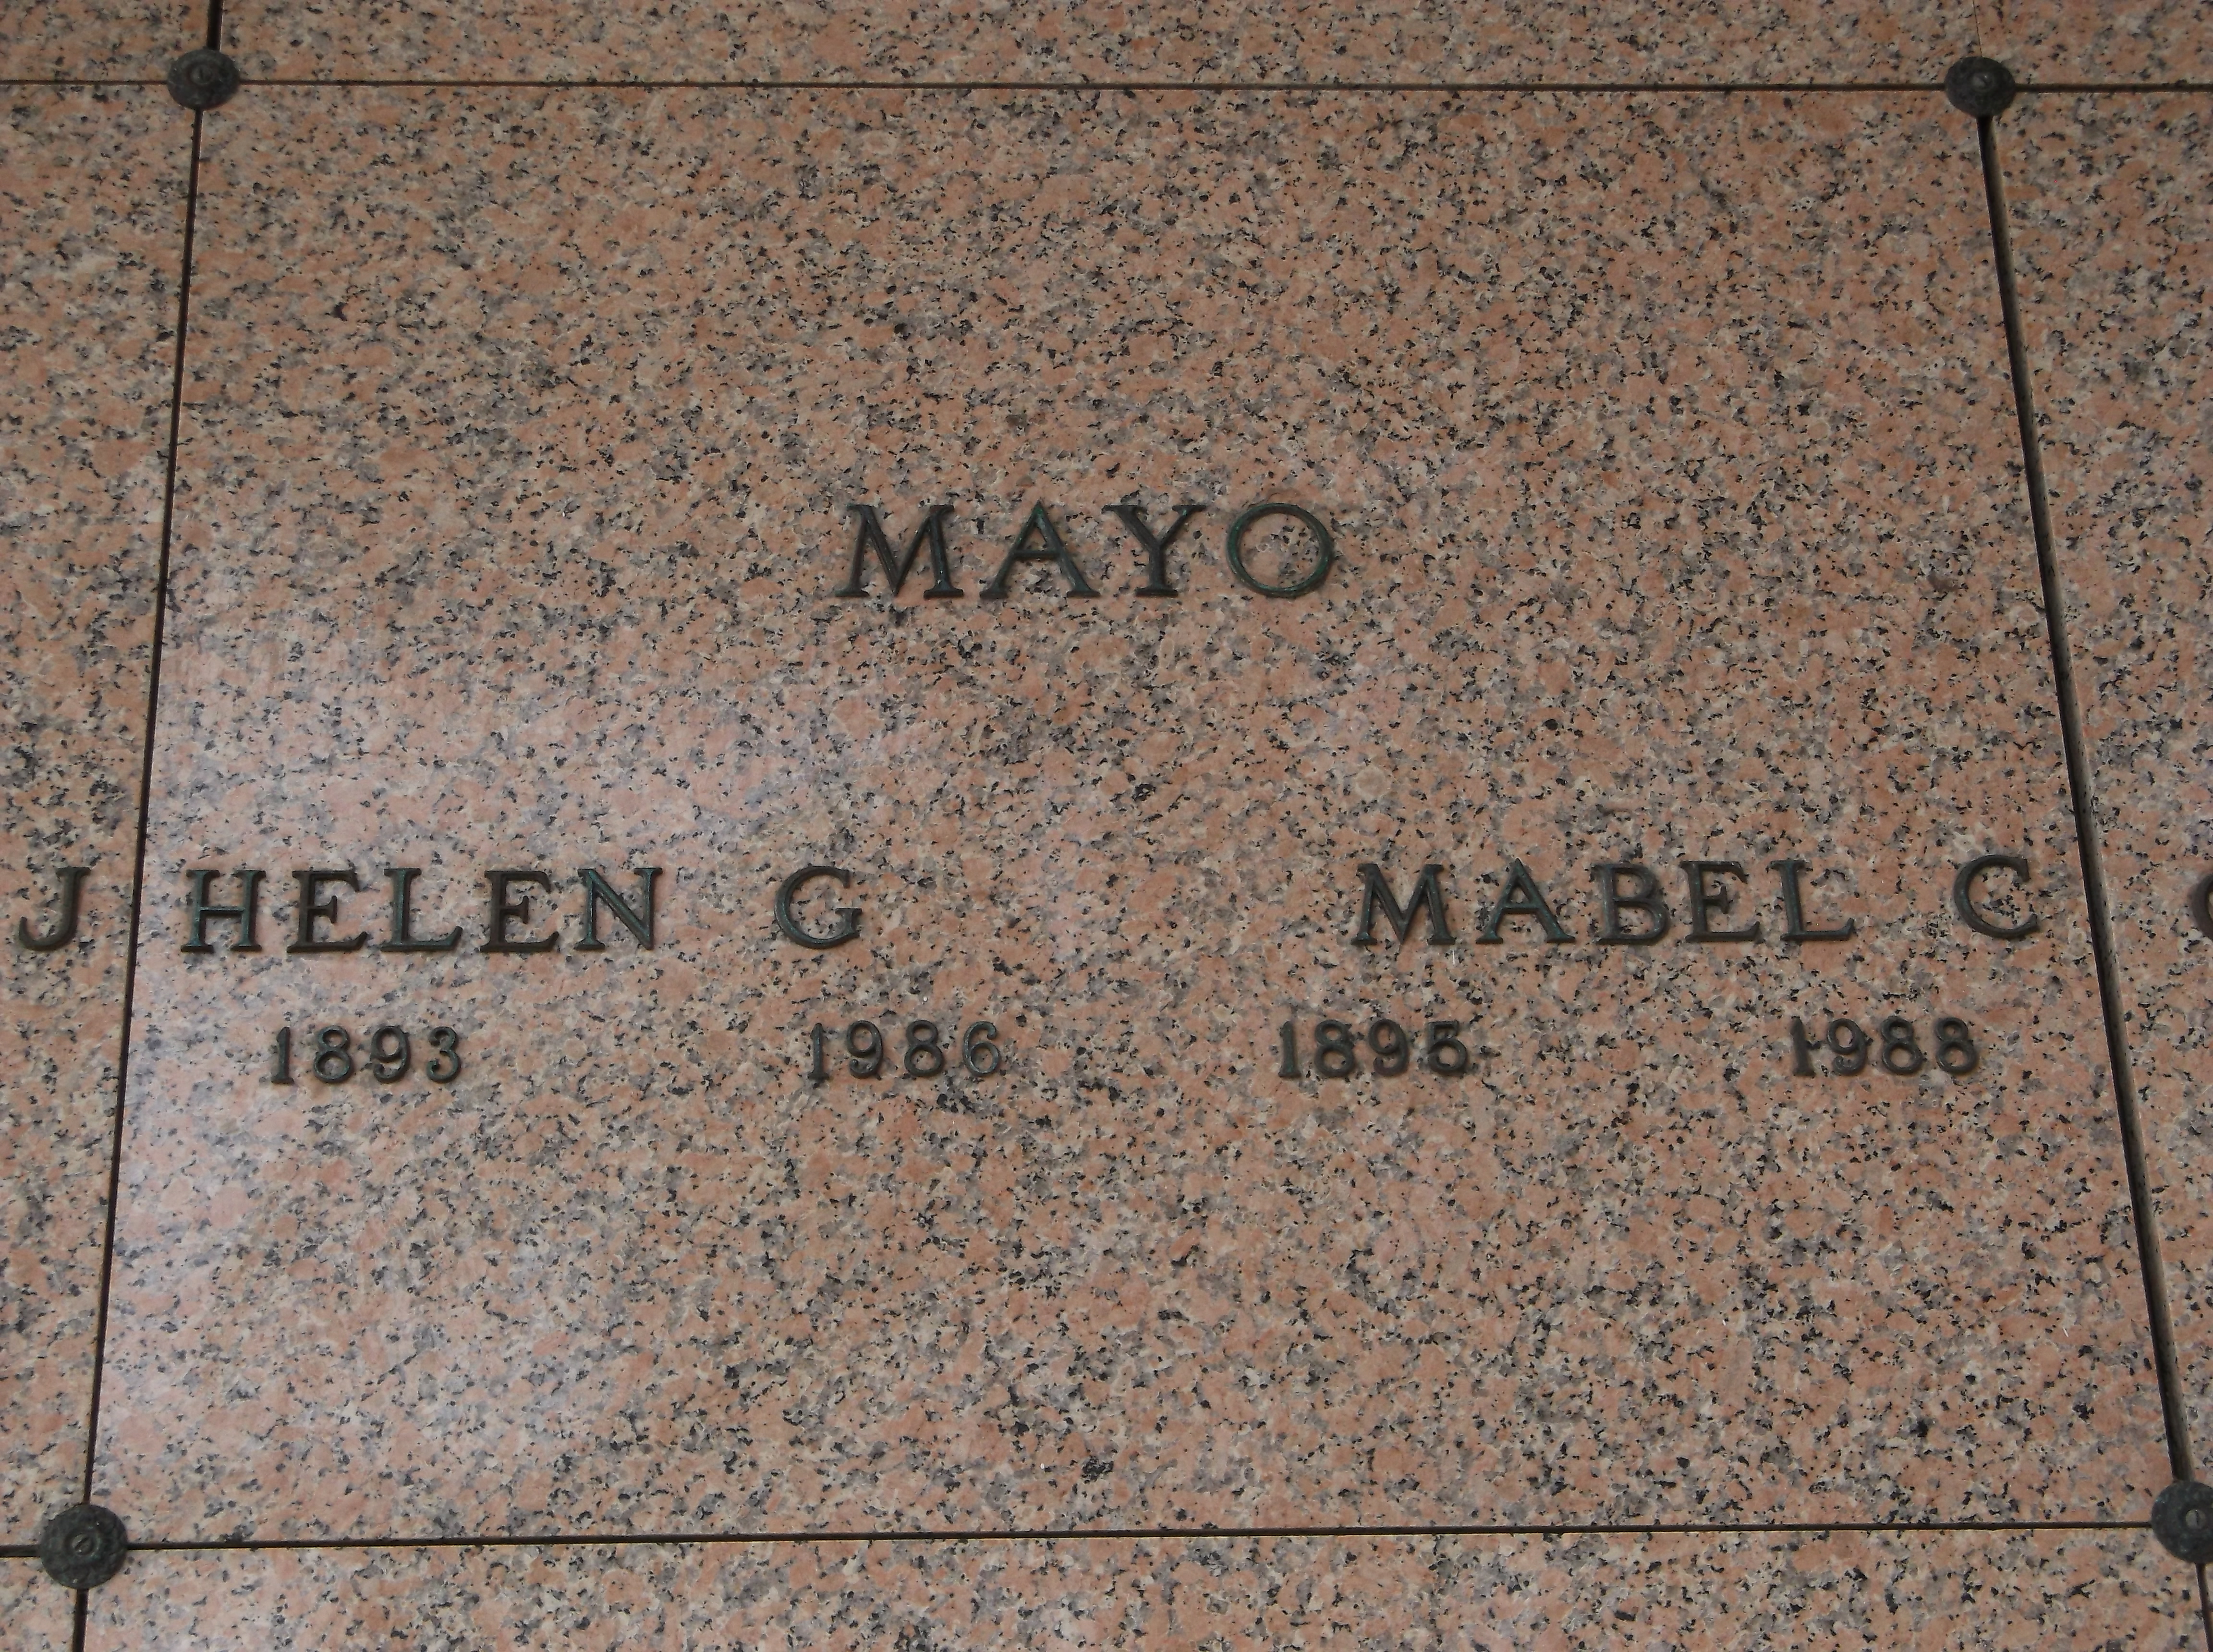 Mabel C Mayo